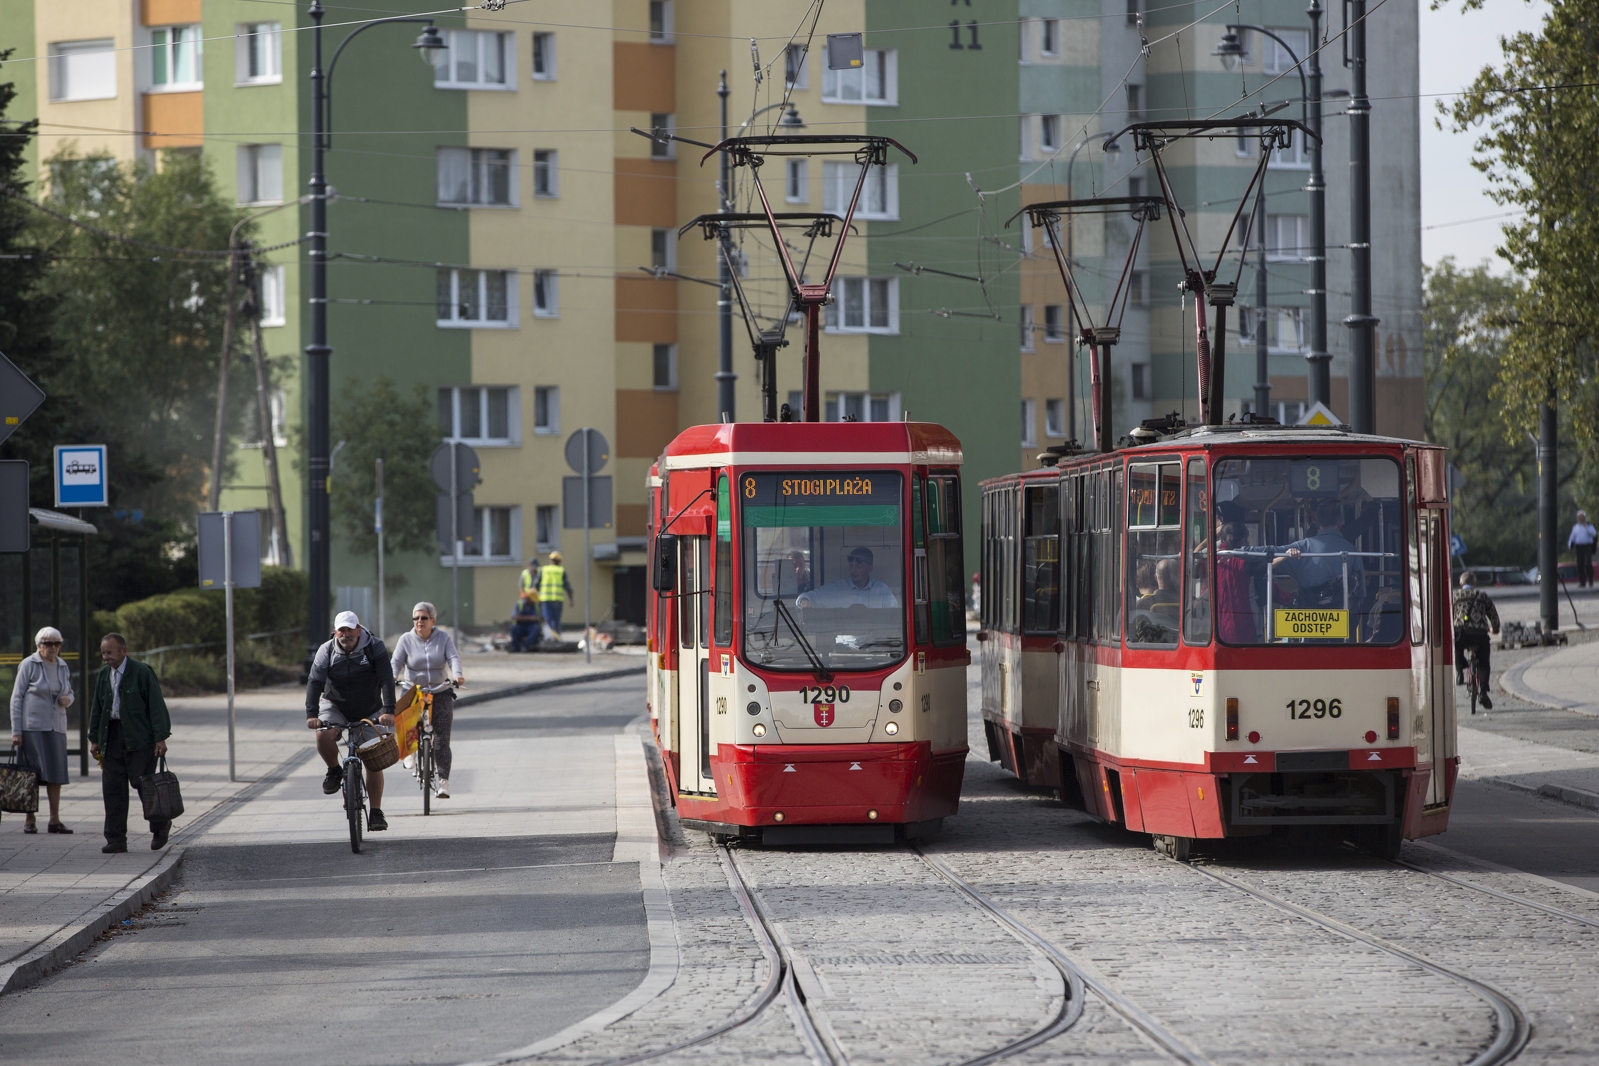 Na zdjęciu widać fragment ul. Siennickiej, na której mijają się dwa tramwaje. Po lewej stronie przystanek wiedeński, przez który przejeżdża dwoje rowerzystów